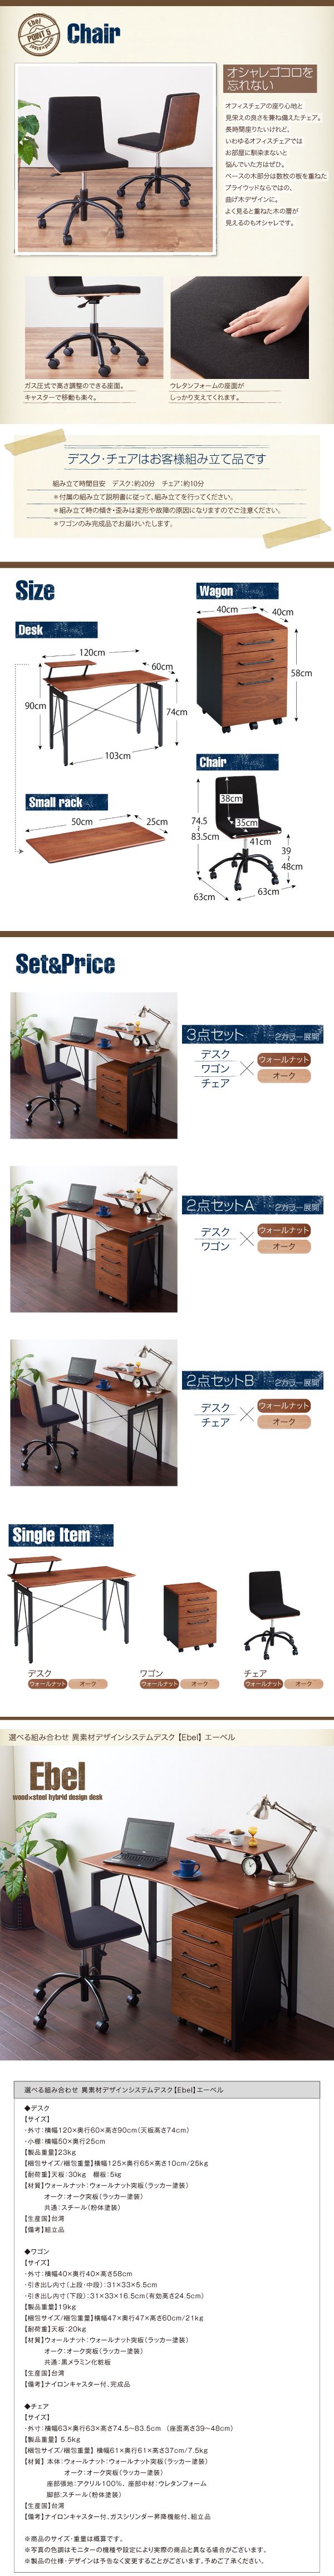 ご購入■Ebel 単品 デスク 異素材デザインシステムデスク [エーベル] カフェスタイルデスク 木材